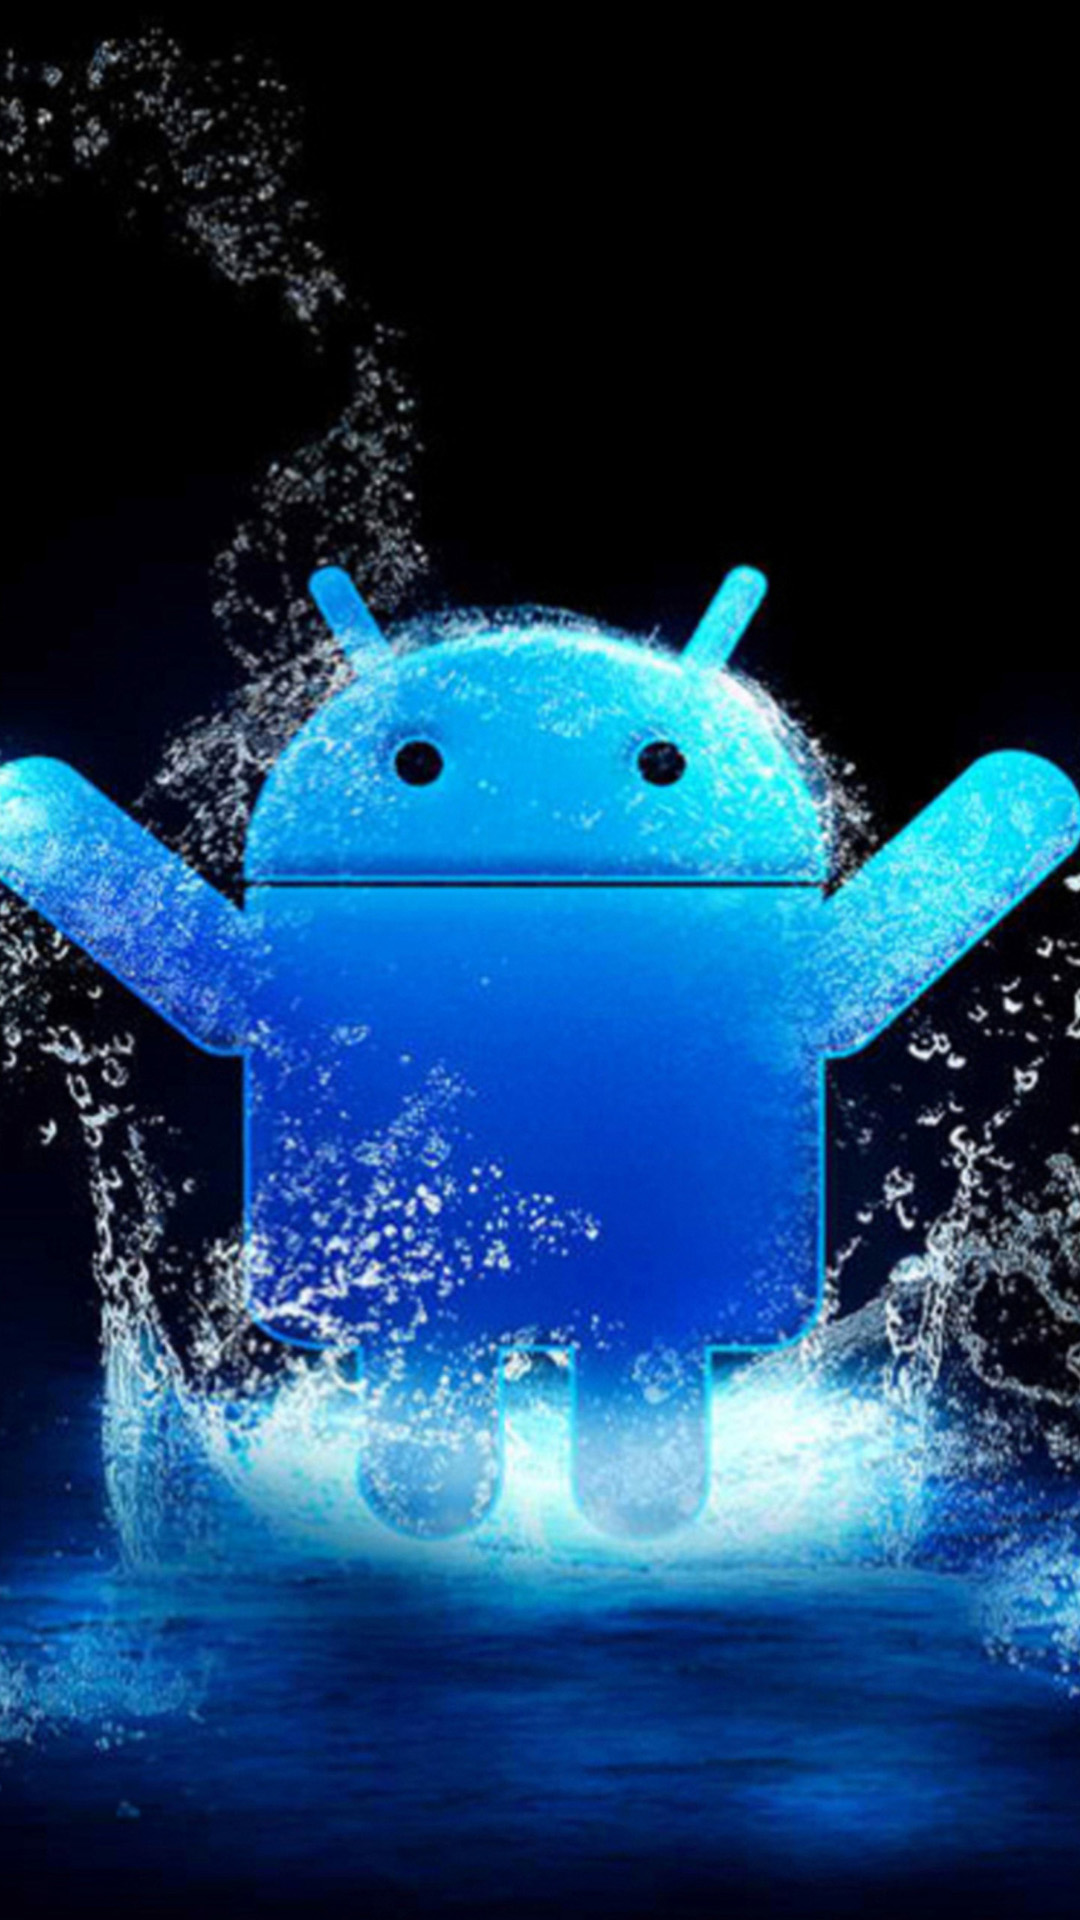 sfondi hd android,blu,acqua,illustrazione,font,tecnologia